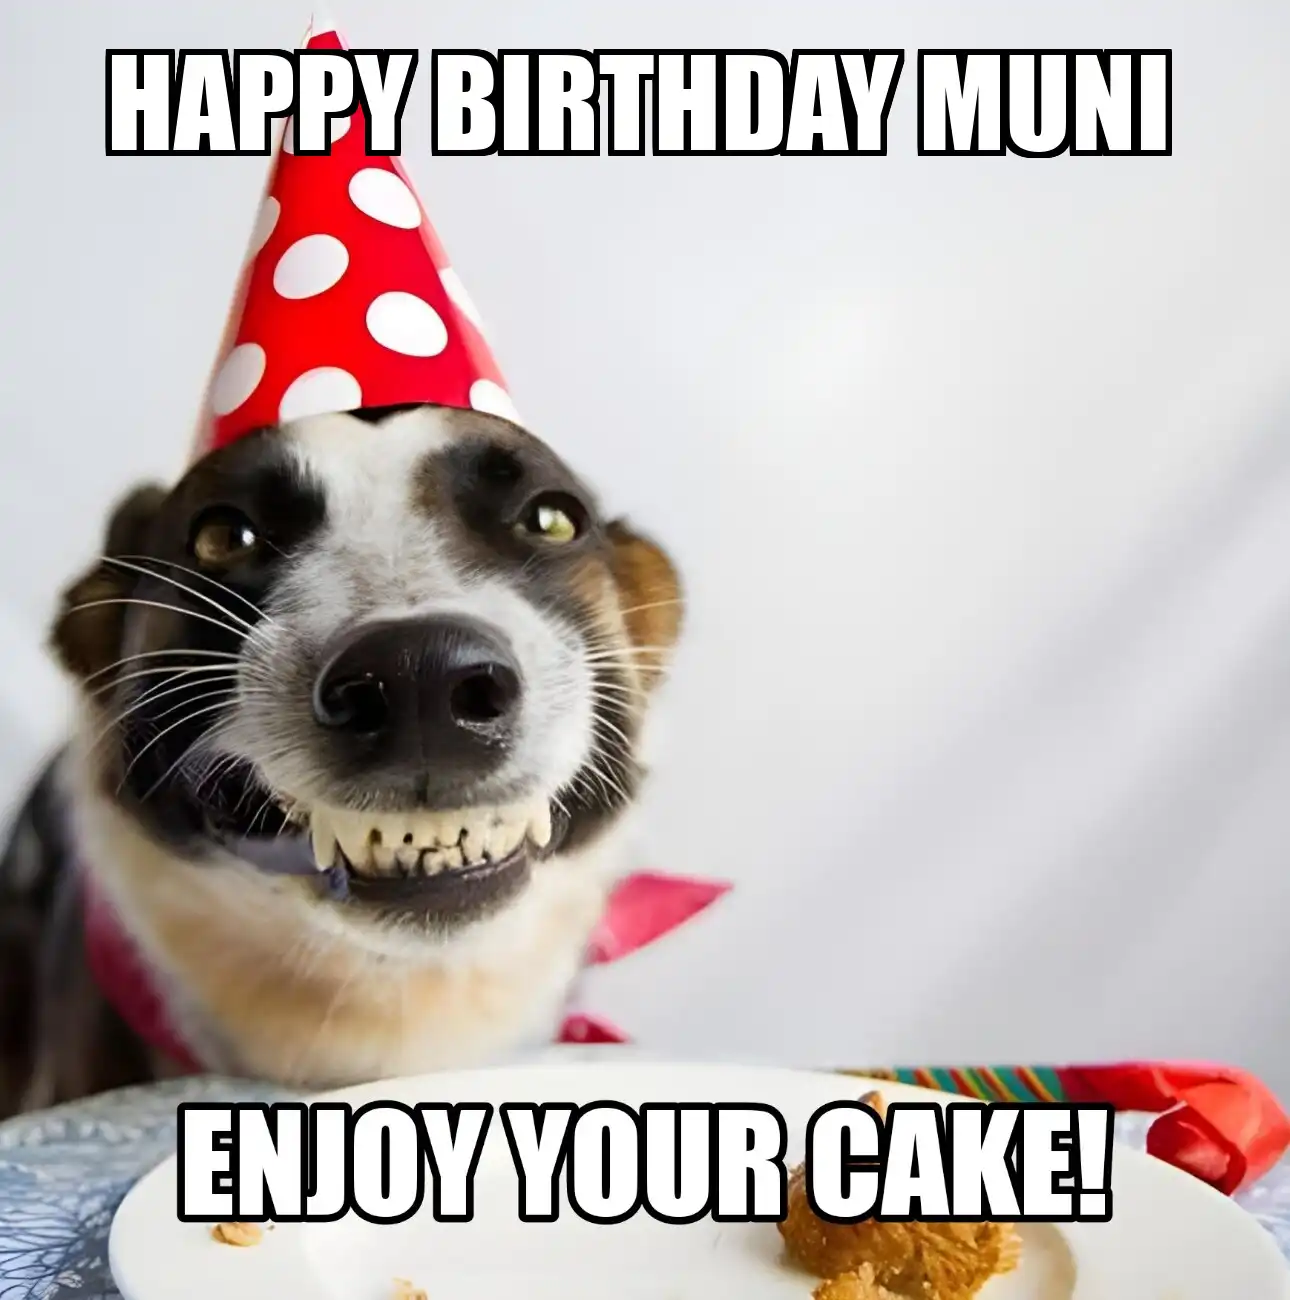 Happy Birthday Muni Enjoy Your Cake Dog Meme